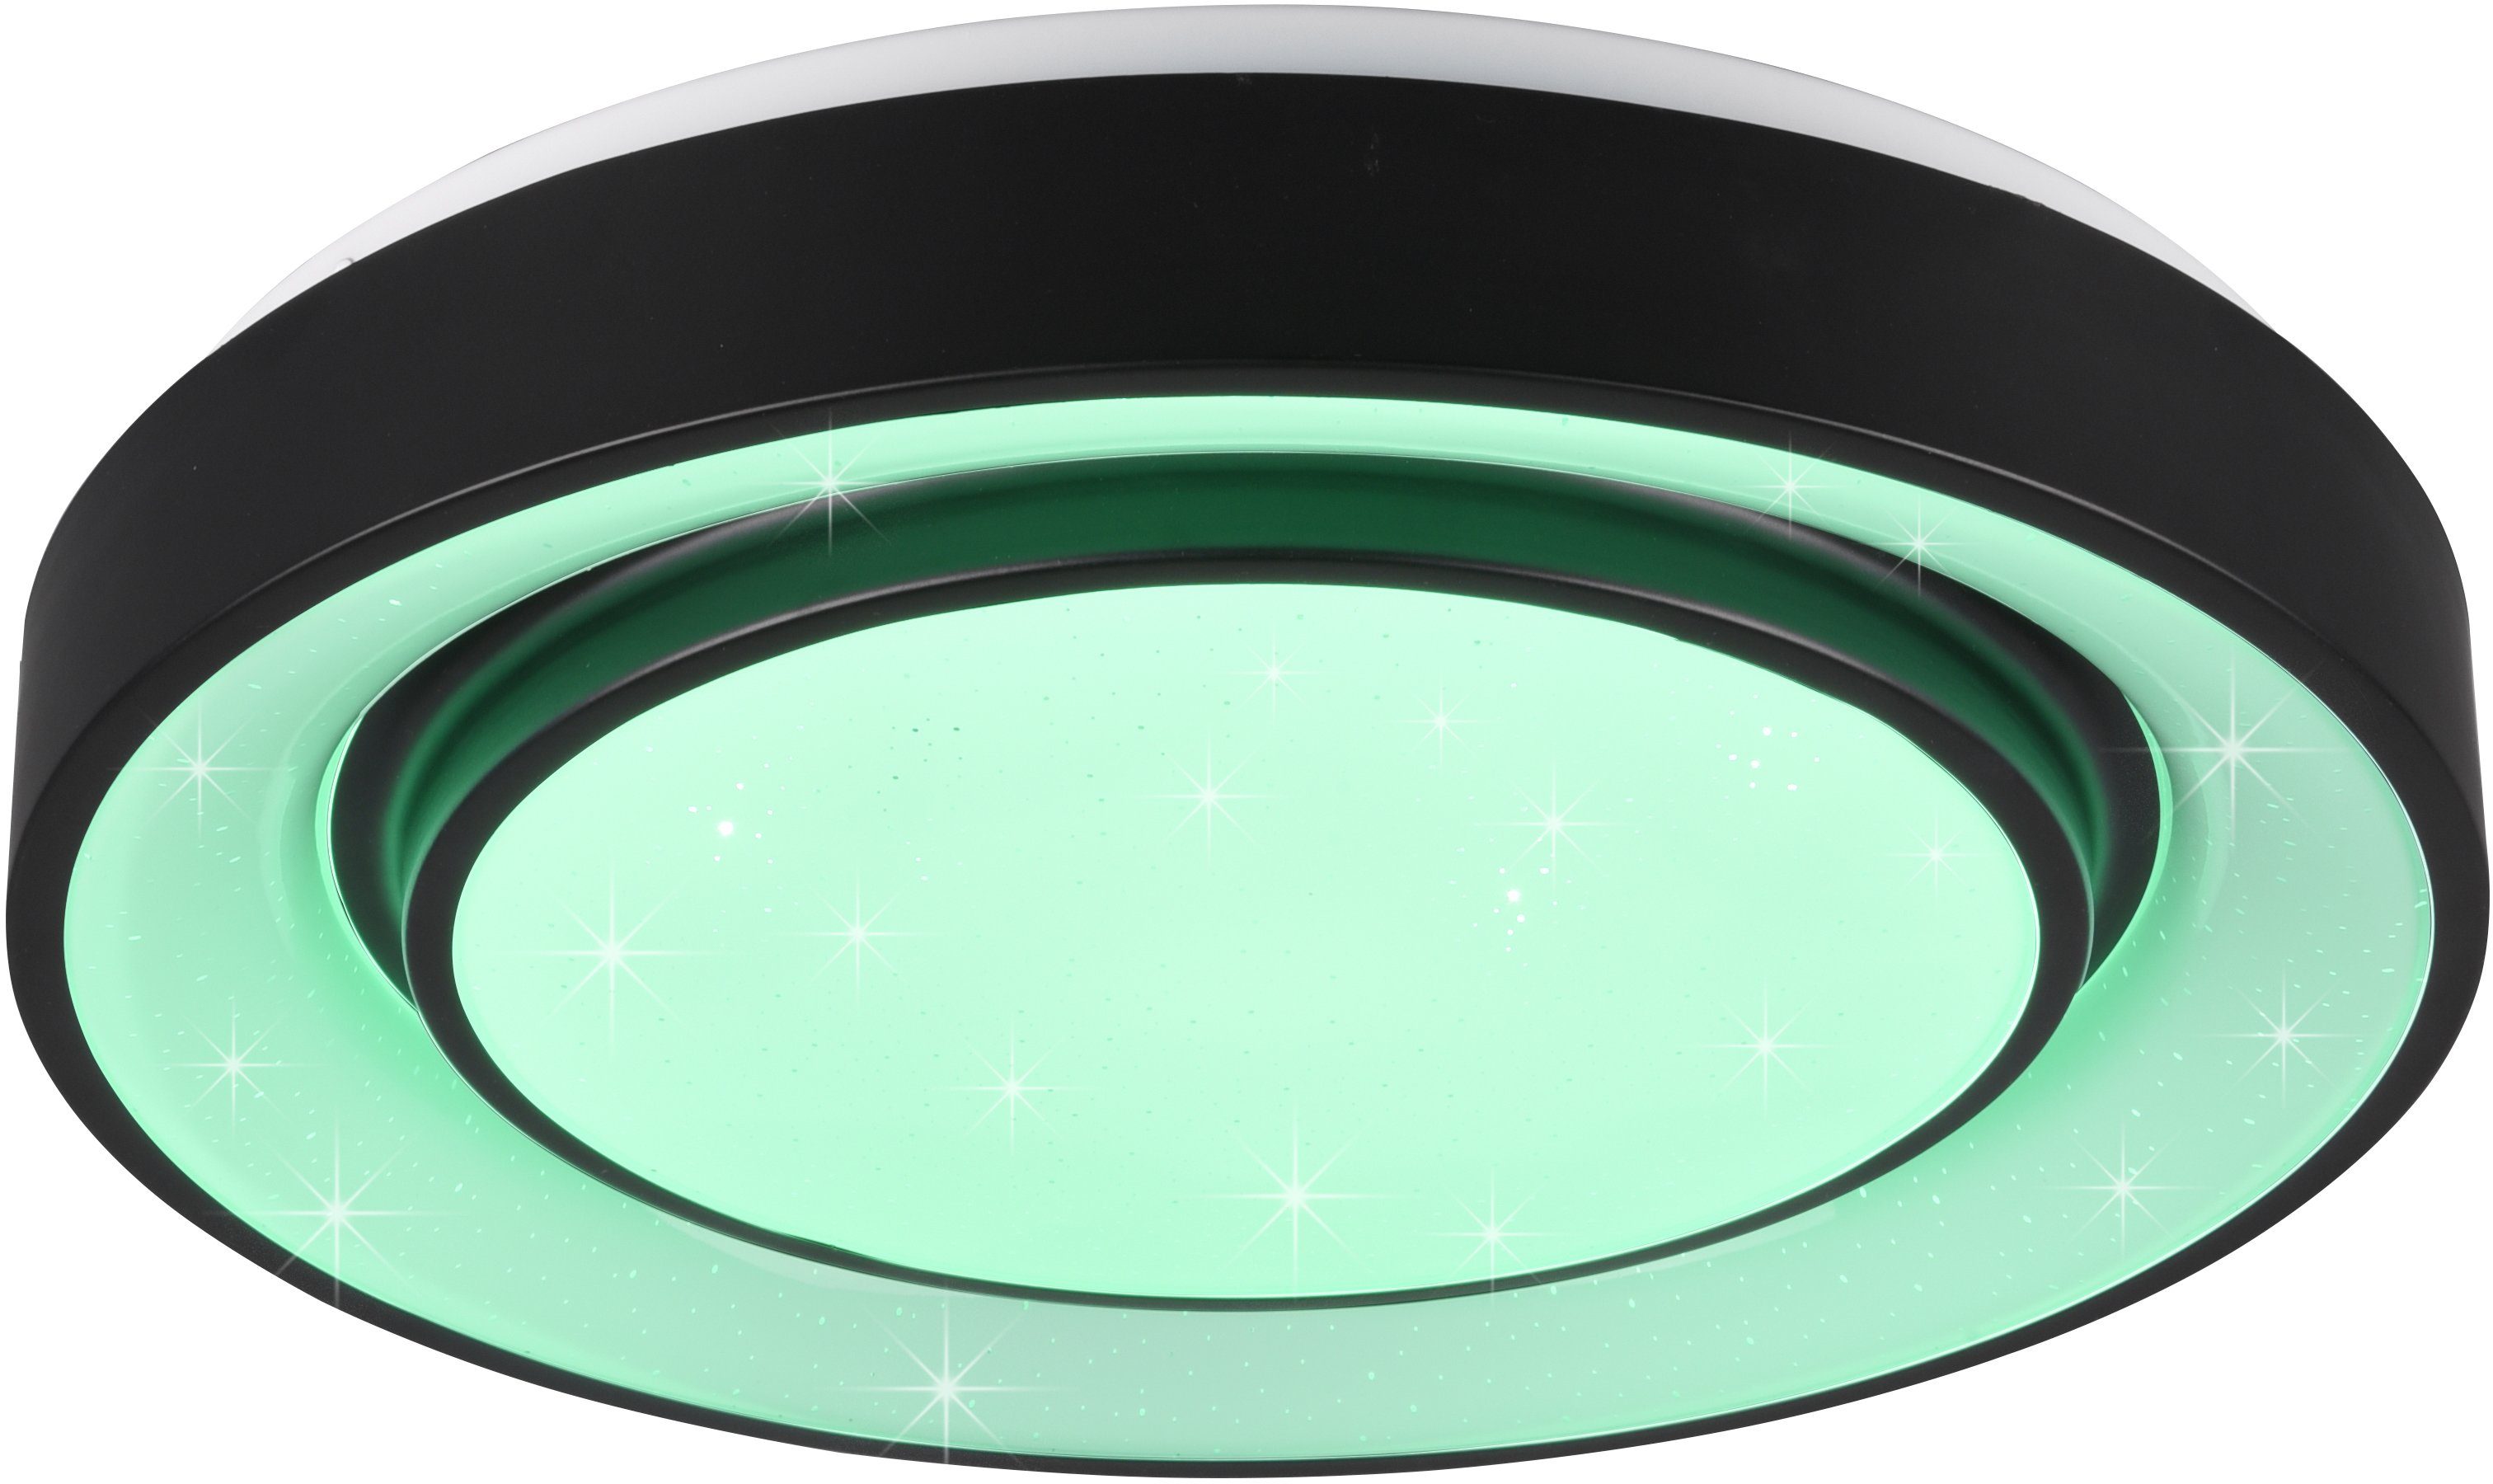 TRIO Leuchten LED einstellbar, mehrere Mona, fest Farbwechsler, LED Starlight-Effekt, Helligkeitsstufen, integriert, Deckenleuchte Dimmer, Nachtlichtfunktion, RGBW-Farbwechsler Farbwechsel, Lichtfarbe stufenlos Memoryfunktion